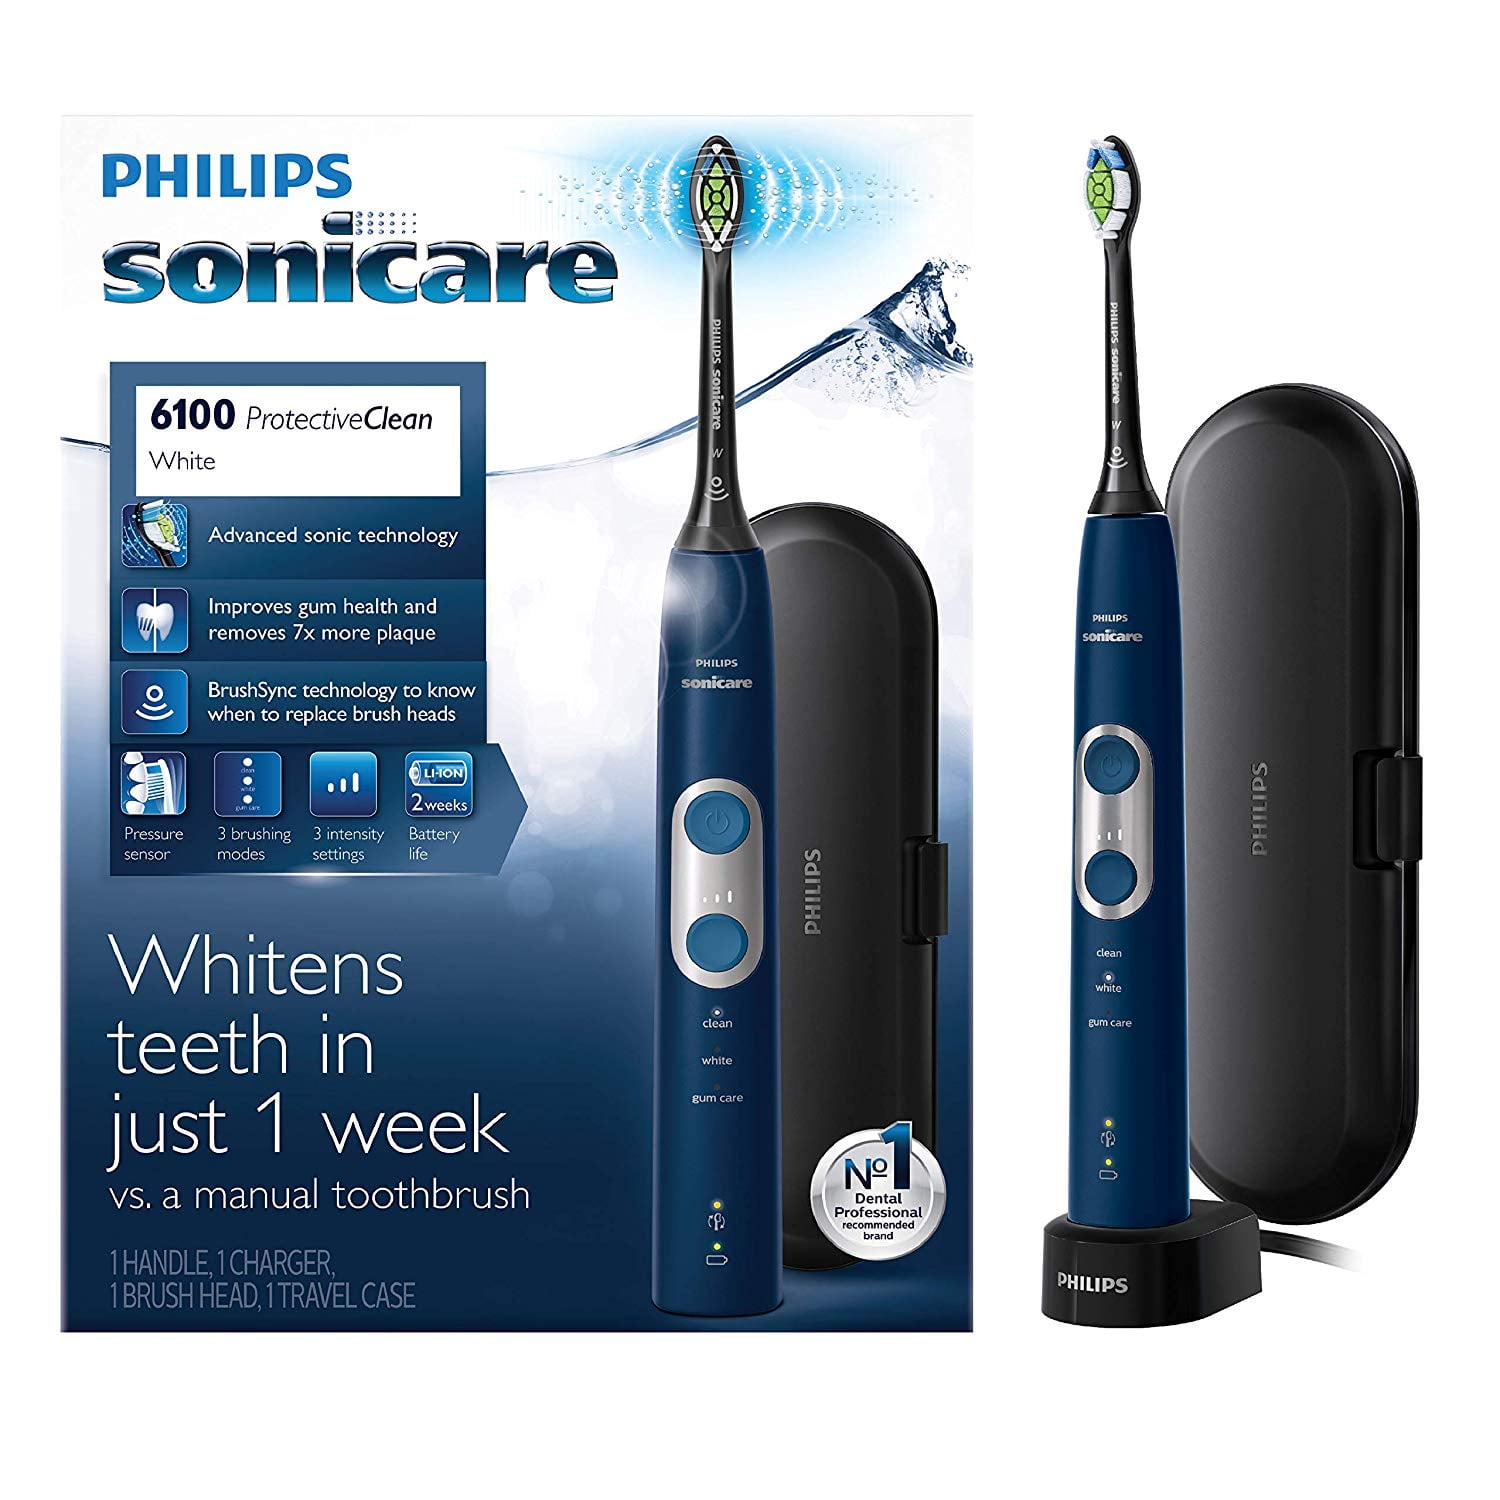 philips-sonicare-toothbrush-kasapworldof